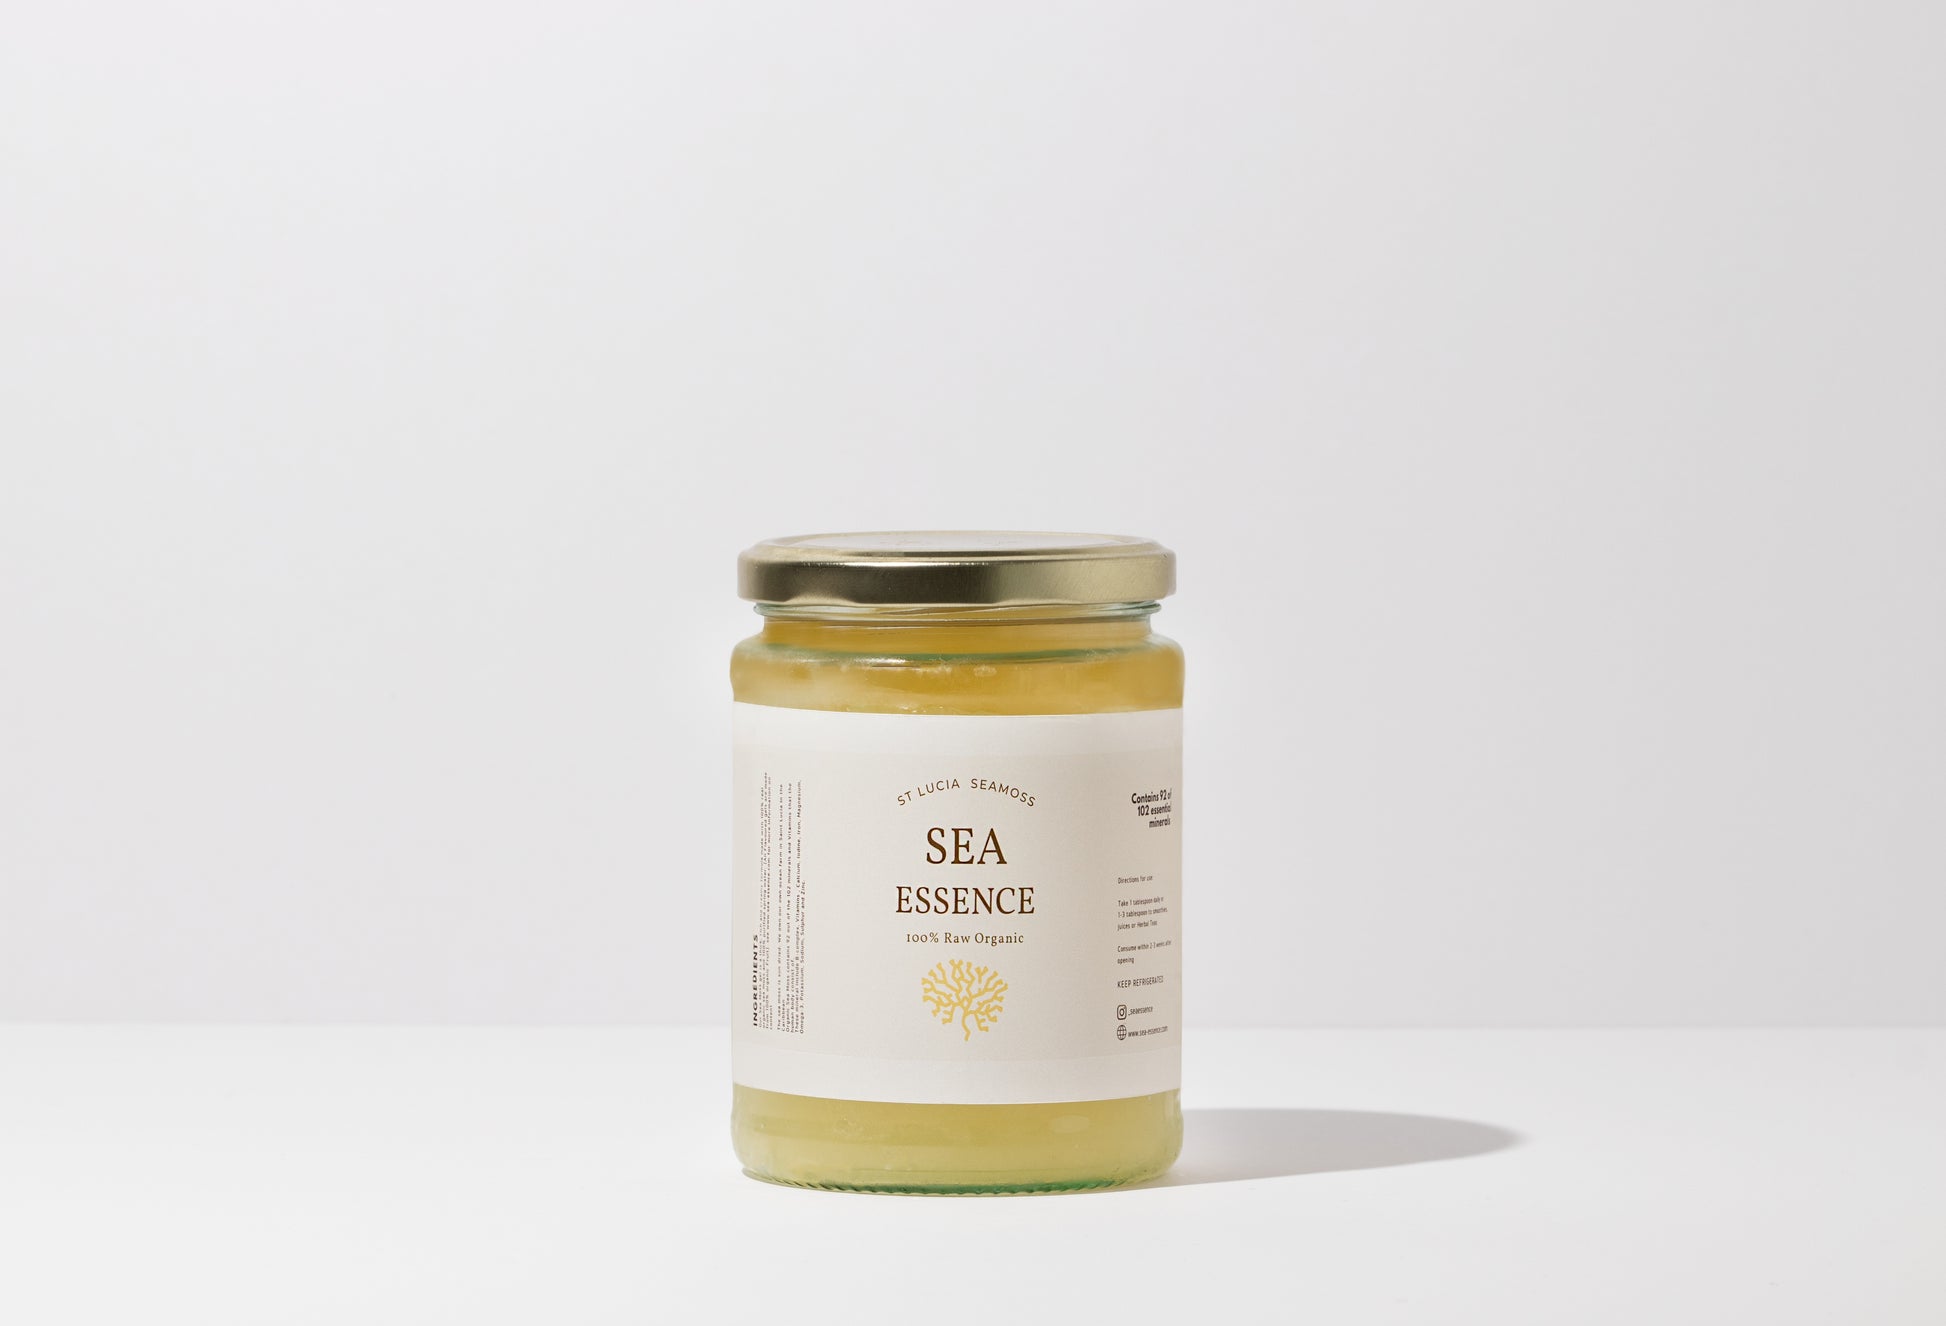 100% Organic Golden Sea Moss Gel (500ml) – Kaizen Moss